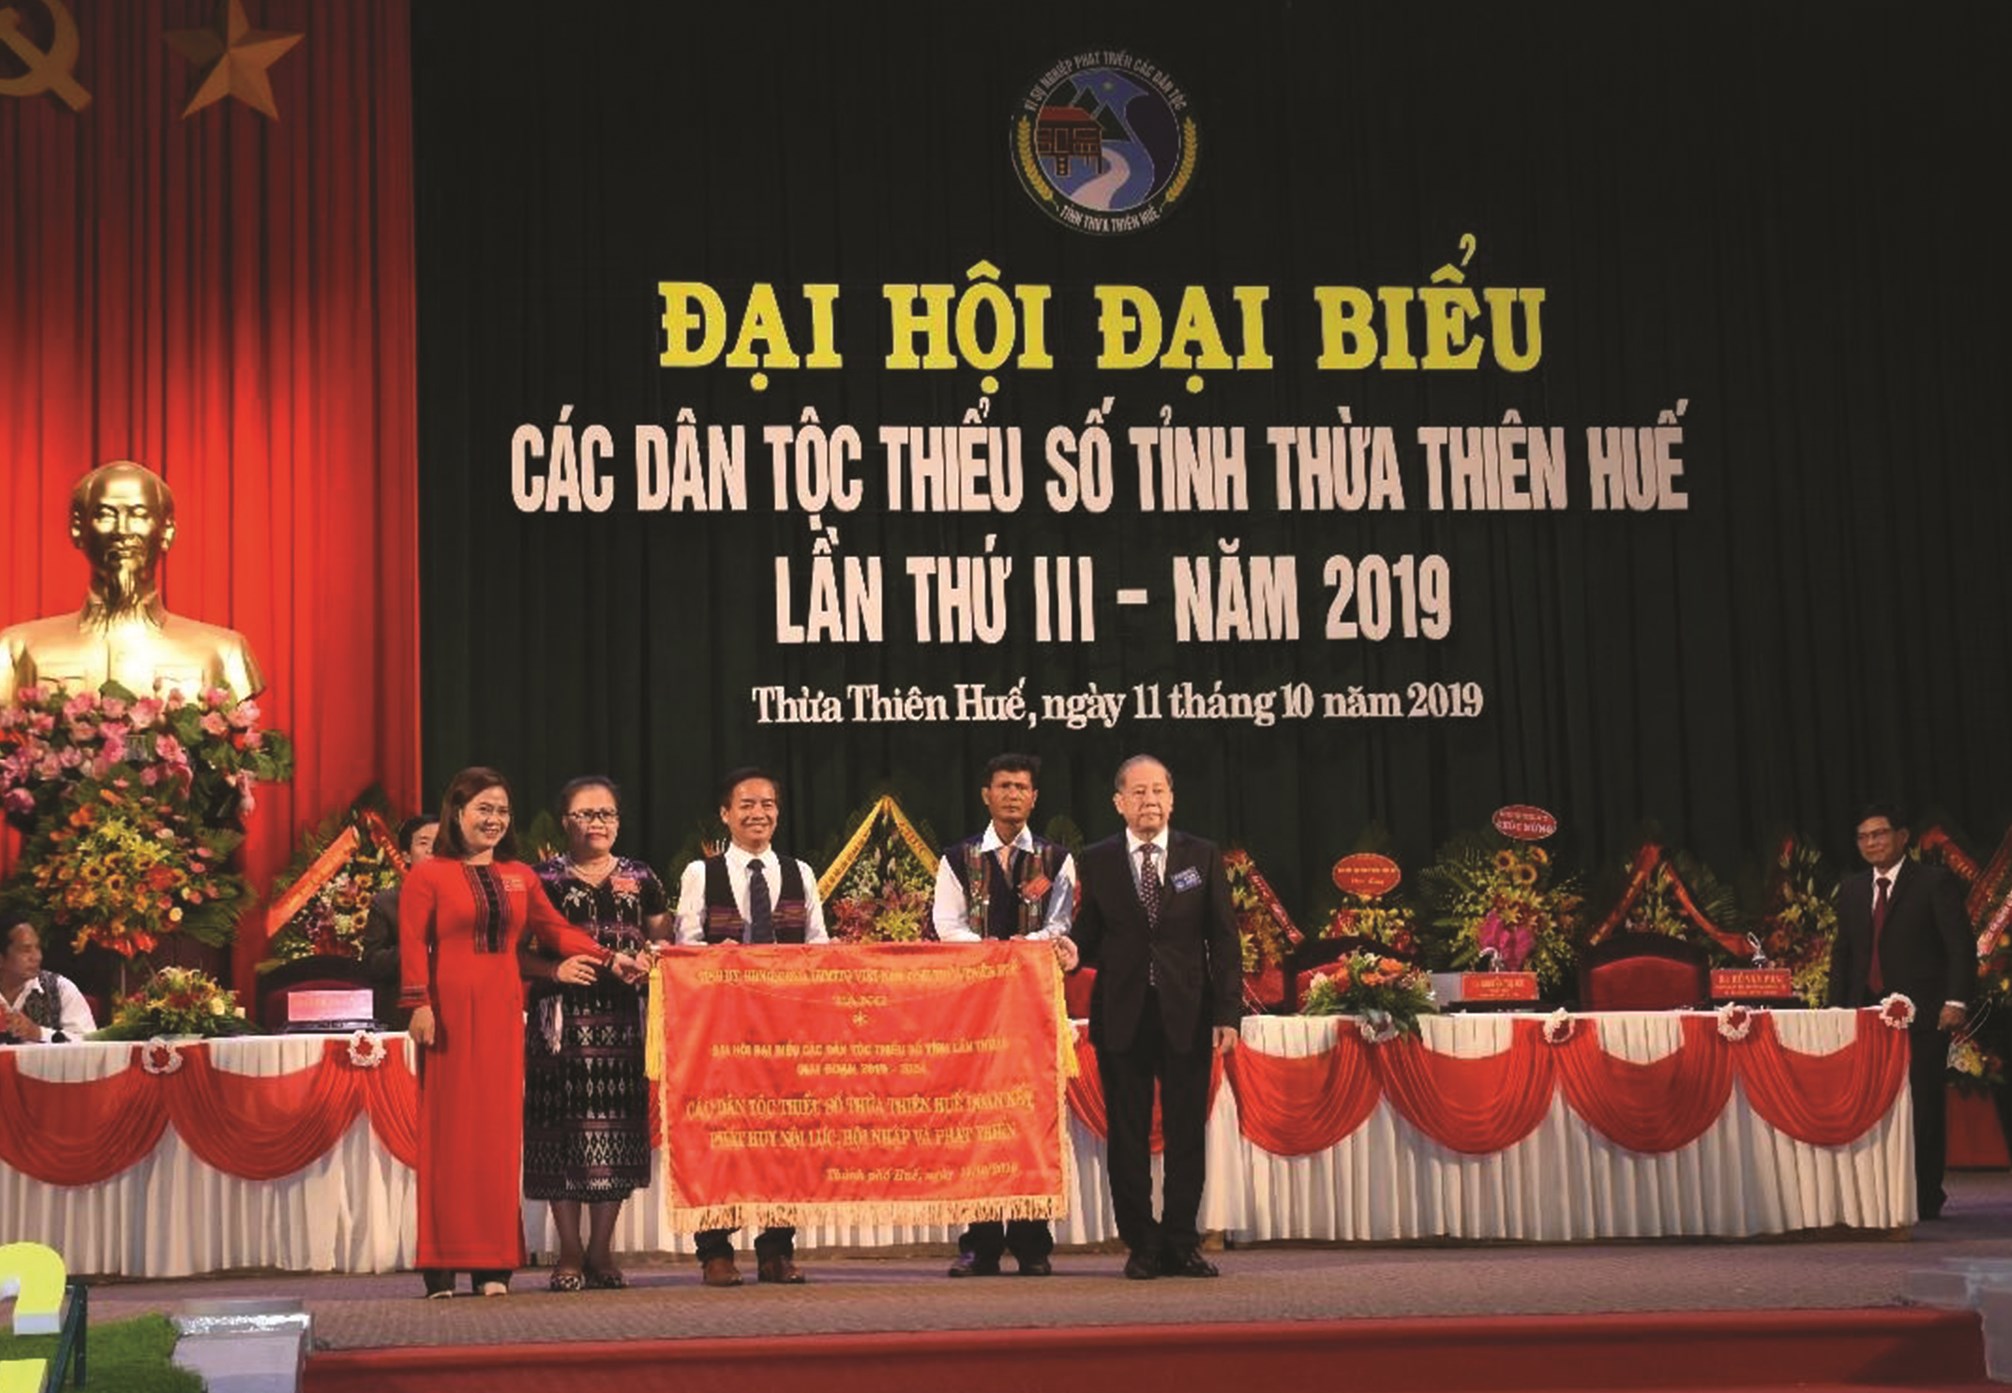 Ông Phan Ngọc Thọ, Chủ tịch UBND tỉnh Thừa Thiên - Huế (ngoài cùng, bên phải), tặng bức trướng của Ủy ban MTTQ tỉnh cho Ban Dân tộc tỉnh tại Đại hội Đại biểu các DTTS tỉnh Thừa Thiên - Huế lần thứ III năm 2019.